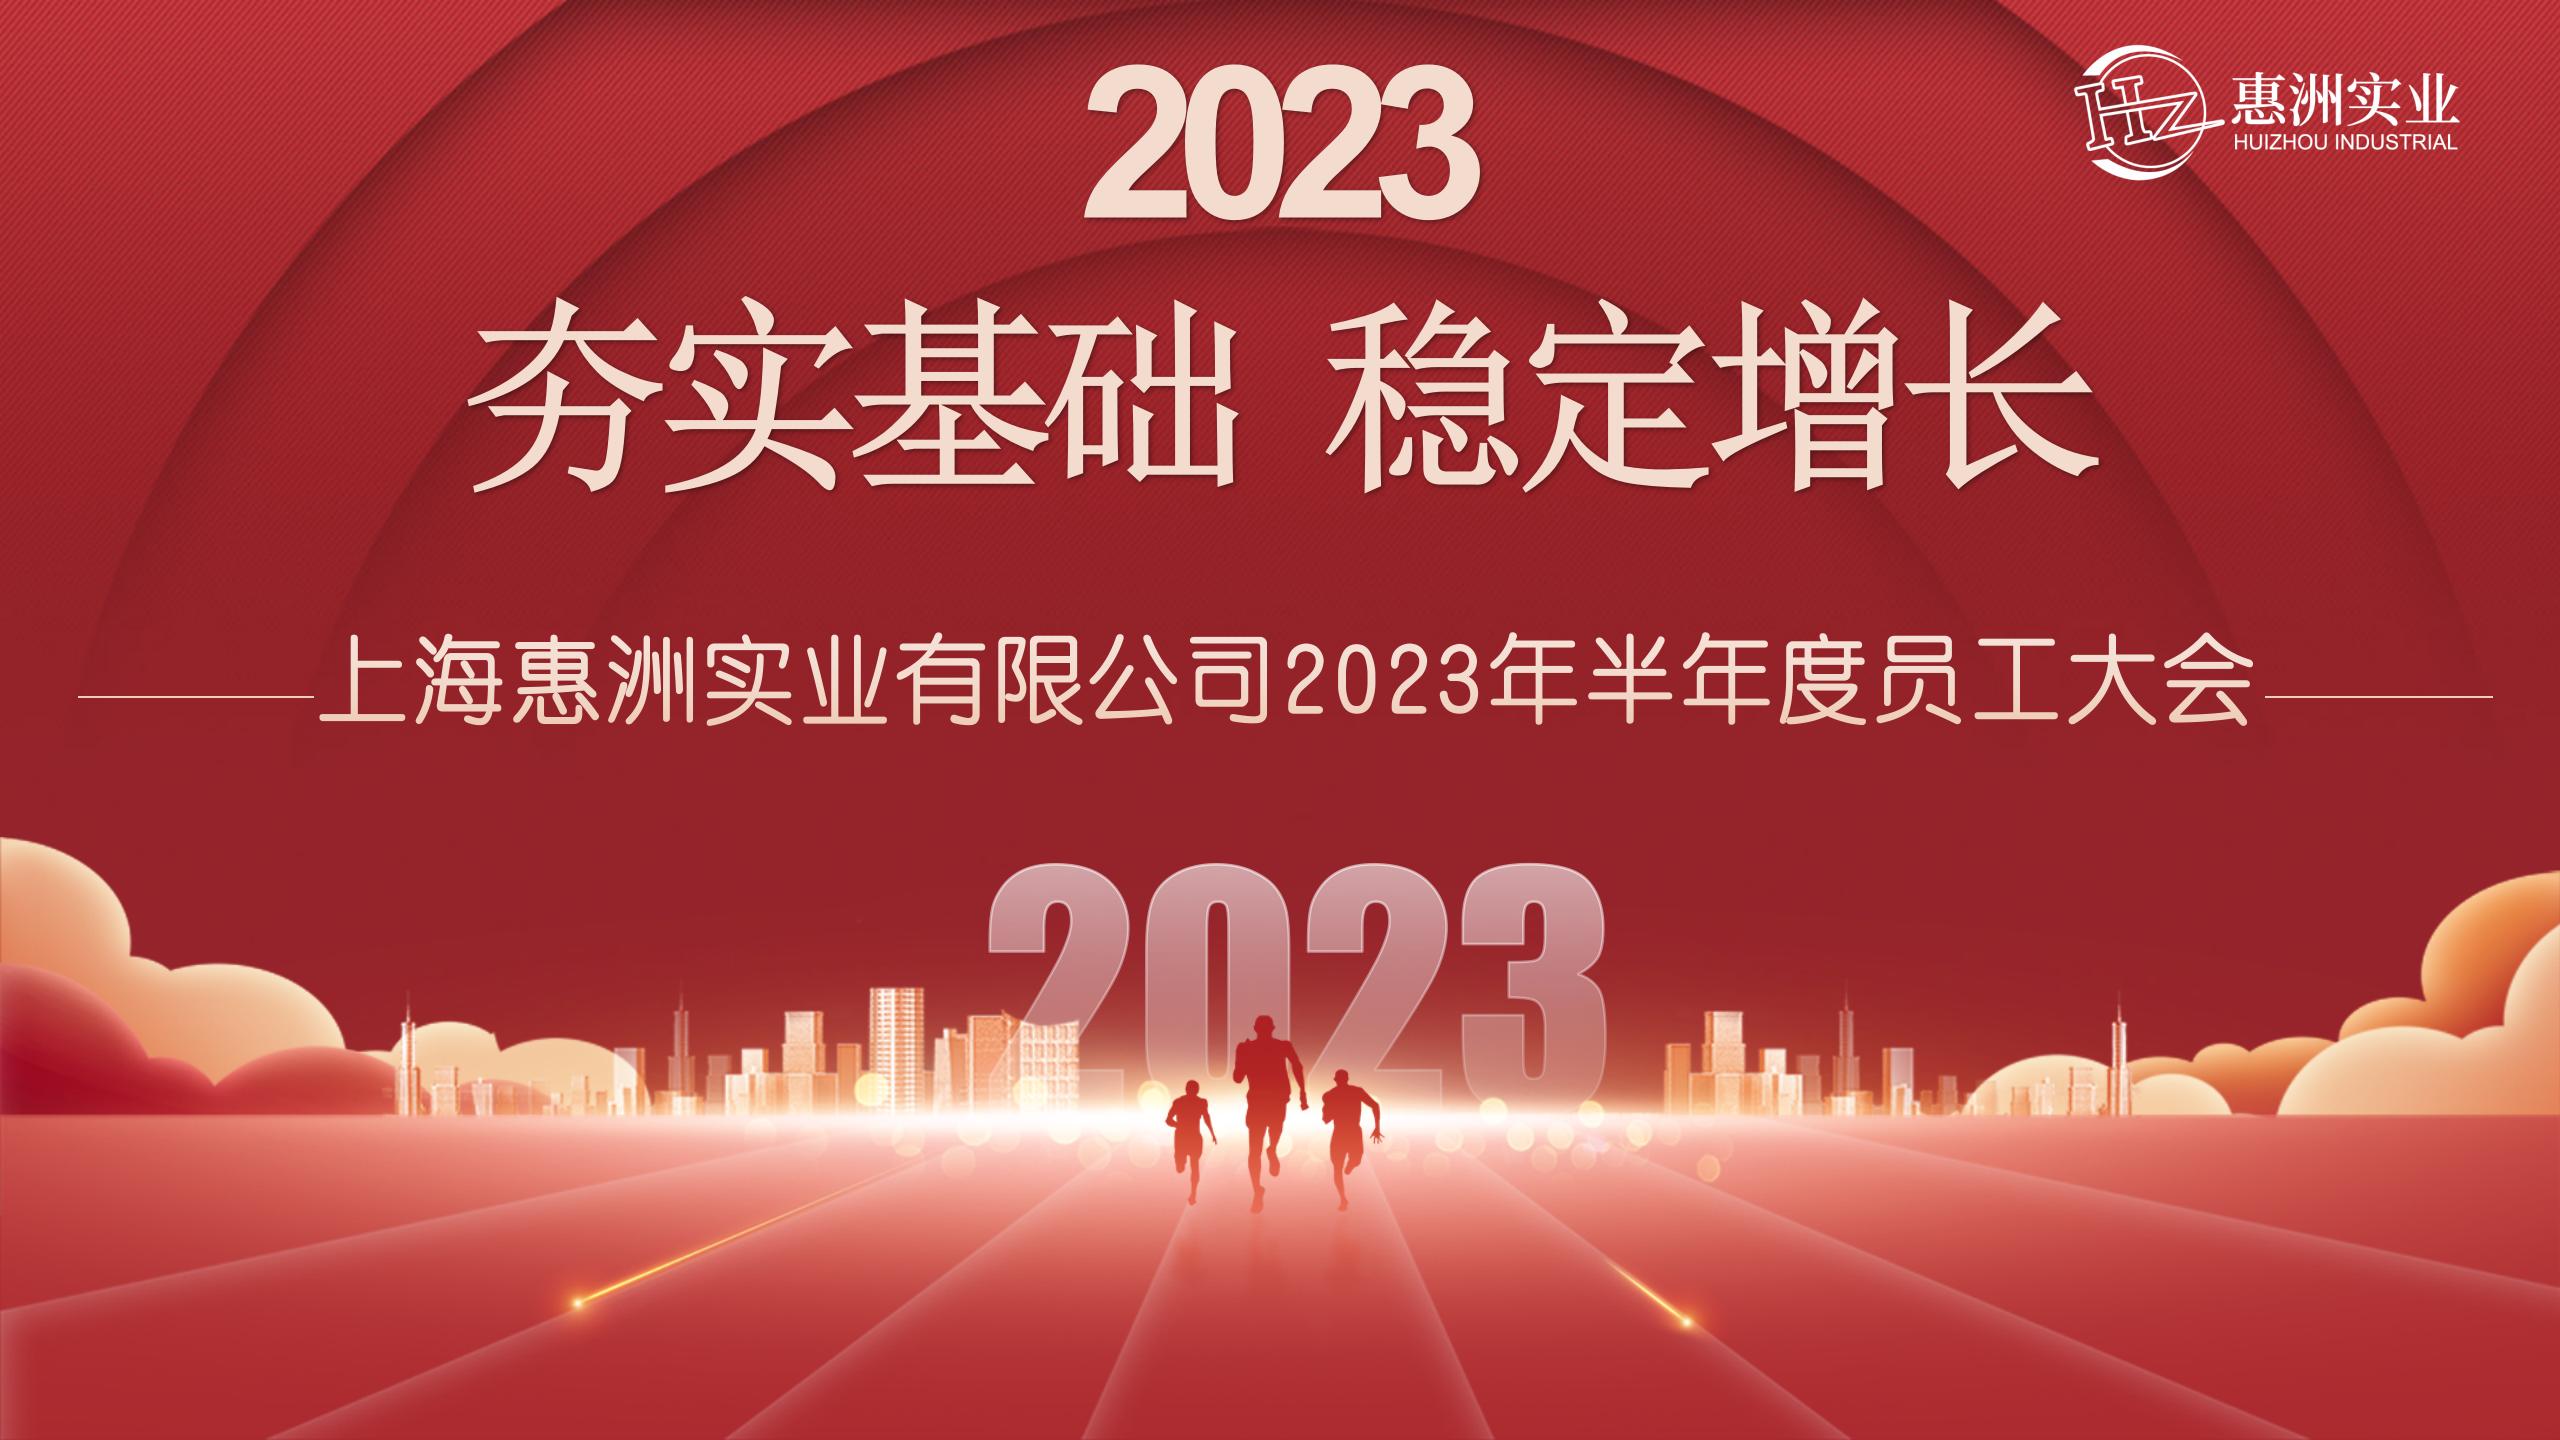 Huizhou ýarym ýyllyk işgärler ýygnagy 2023